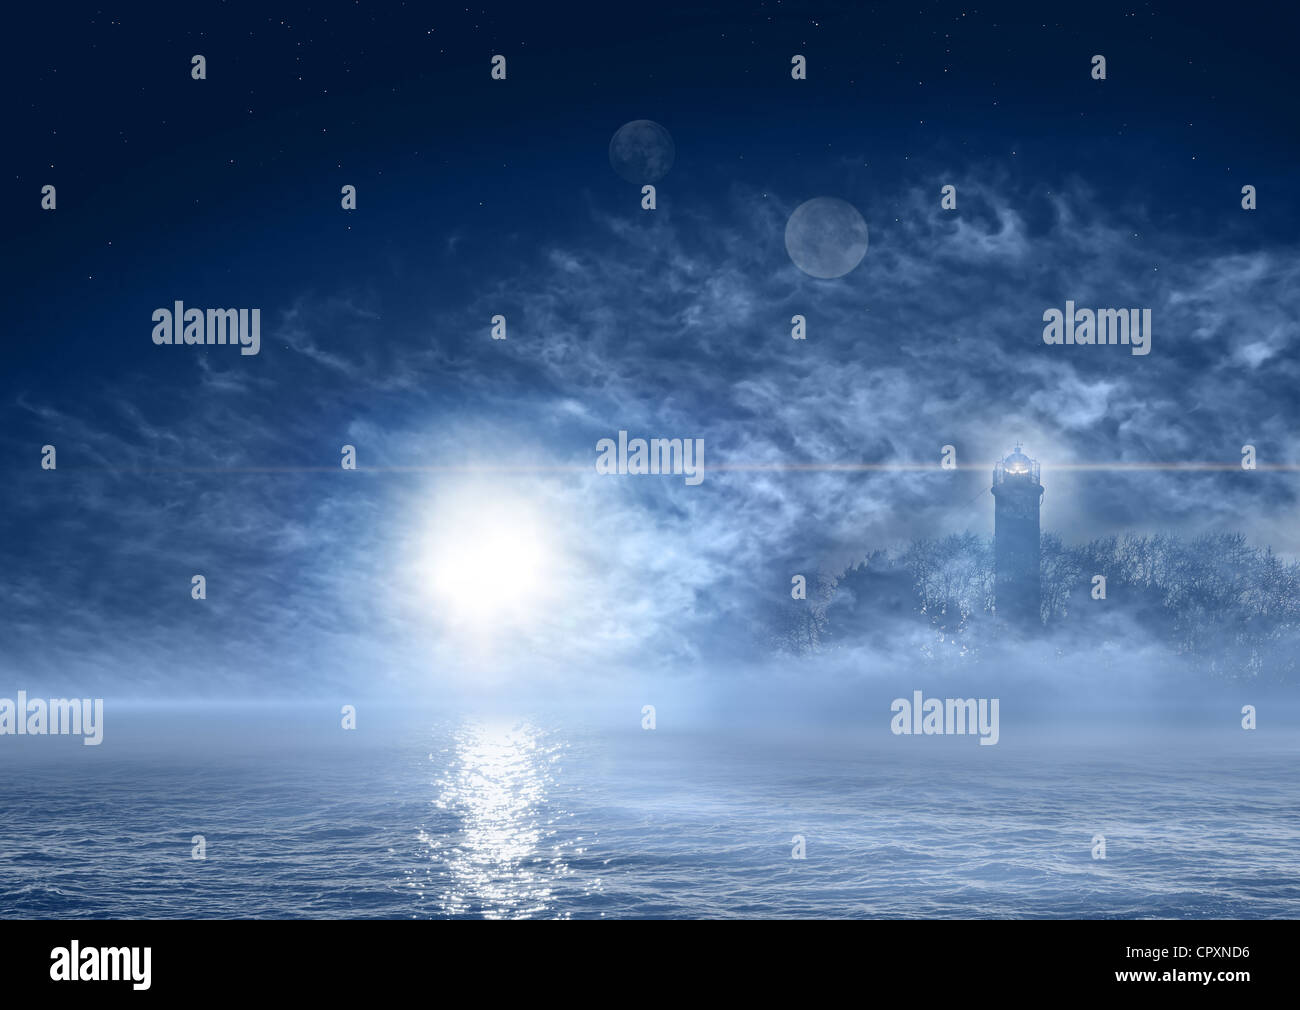 Belle nuit paysage de fantaisie avec de l'océan brumeux, soleil, planètes et phare fantomatique Banque D'Images